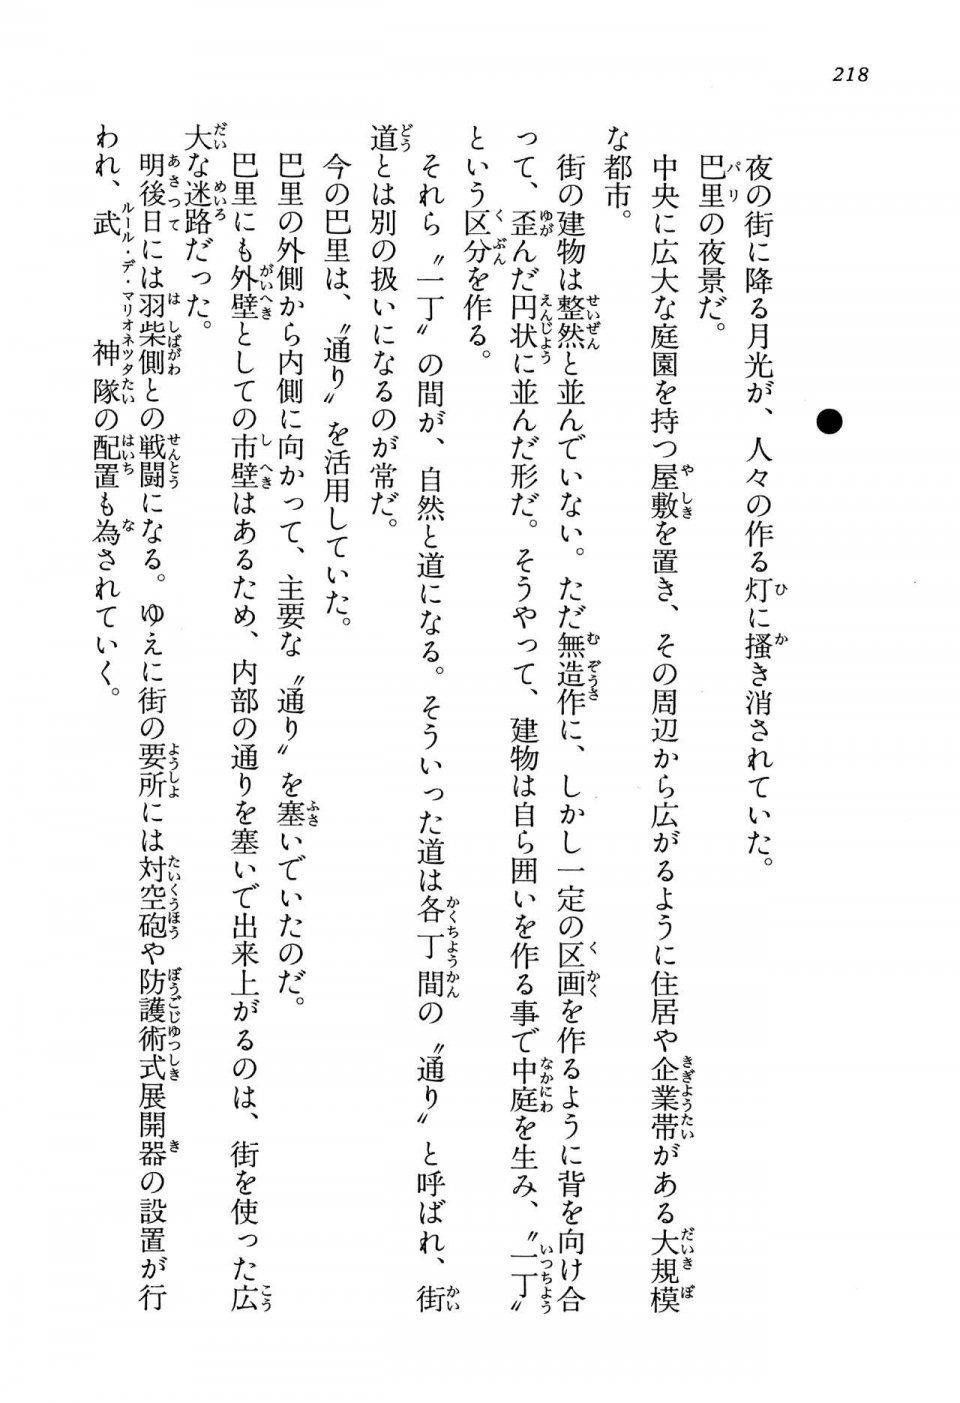 Kyoukai Senjou no Horizon LN Vol 13(6A) - Photo #218